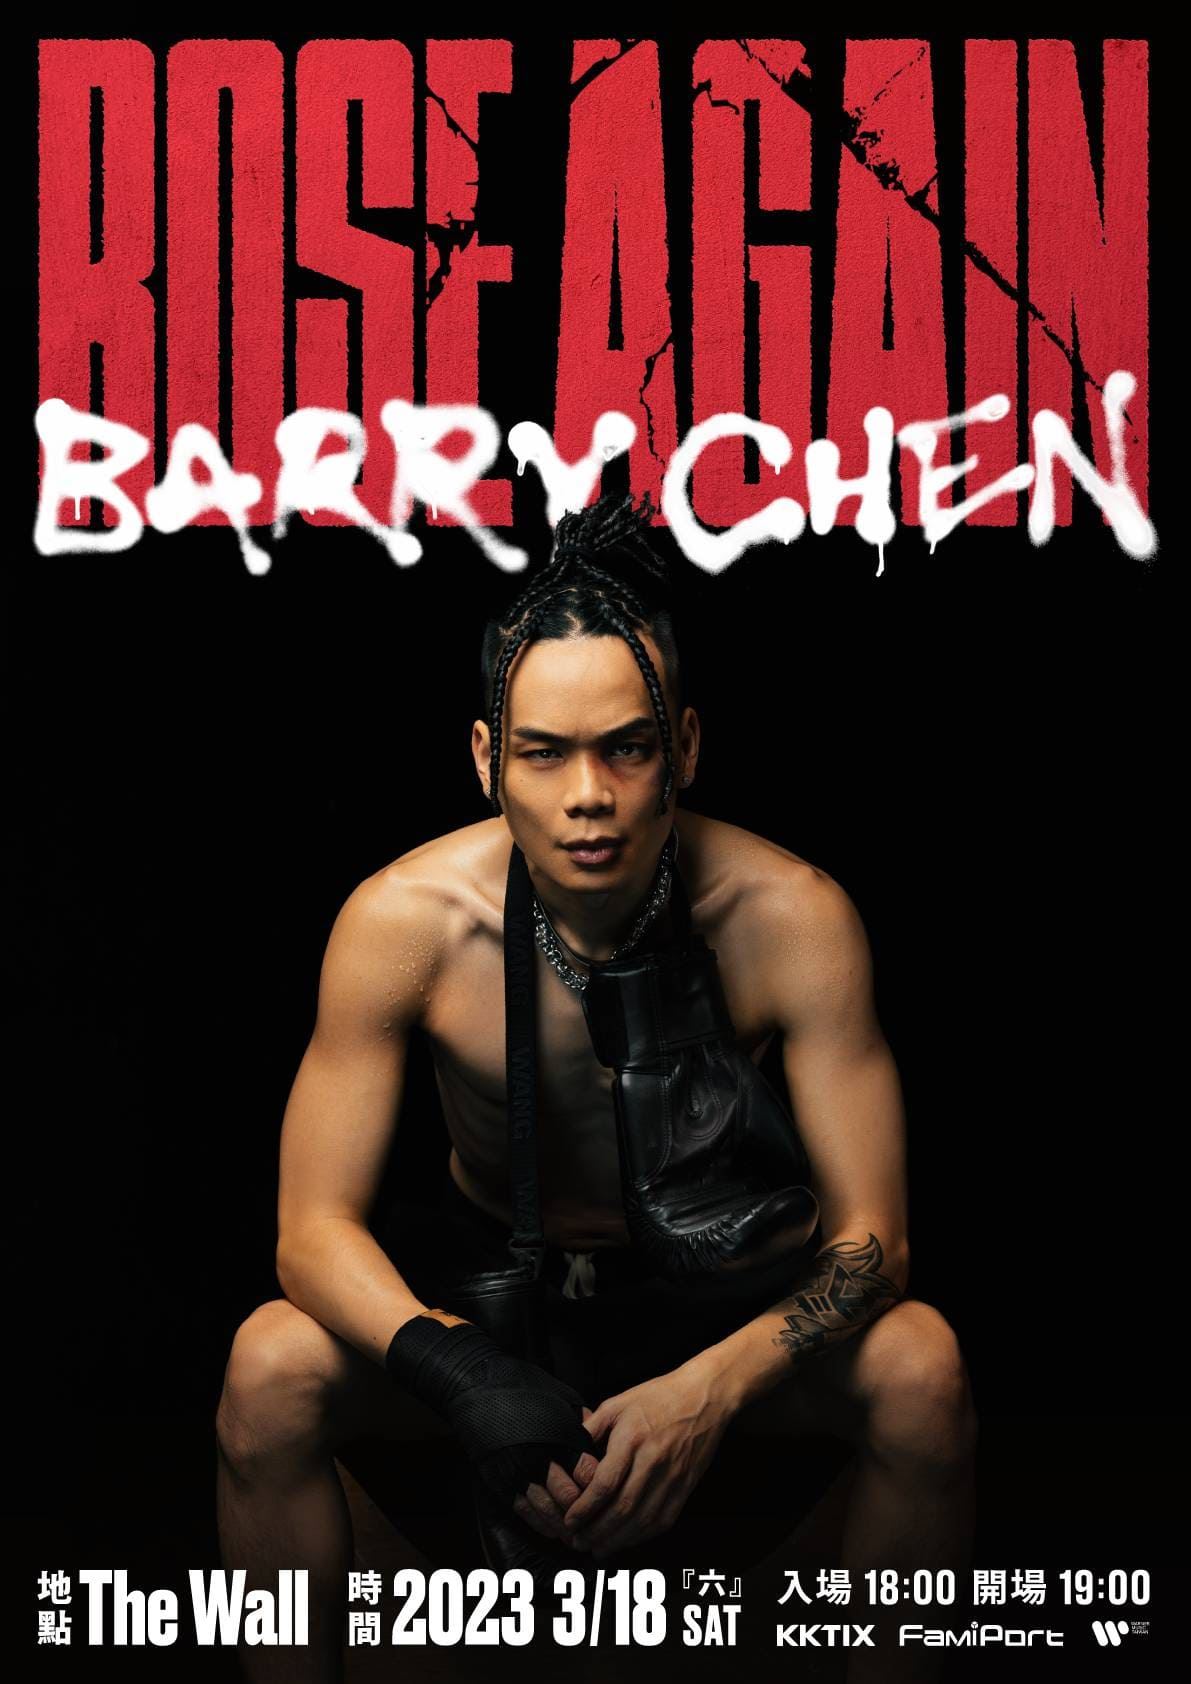 Barry Chen专辑名称致敬NBA球星！分享饶舌之路充满荆棘　事件来龙去脉